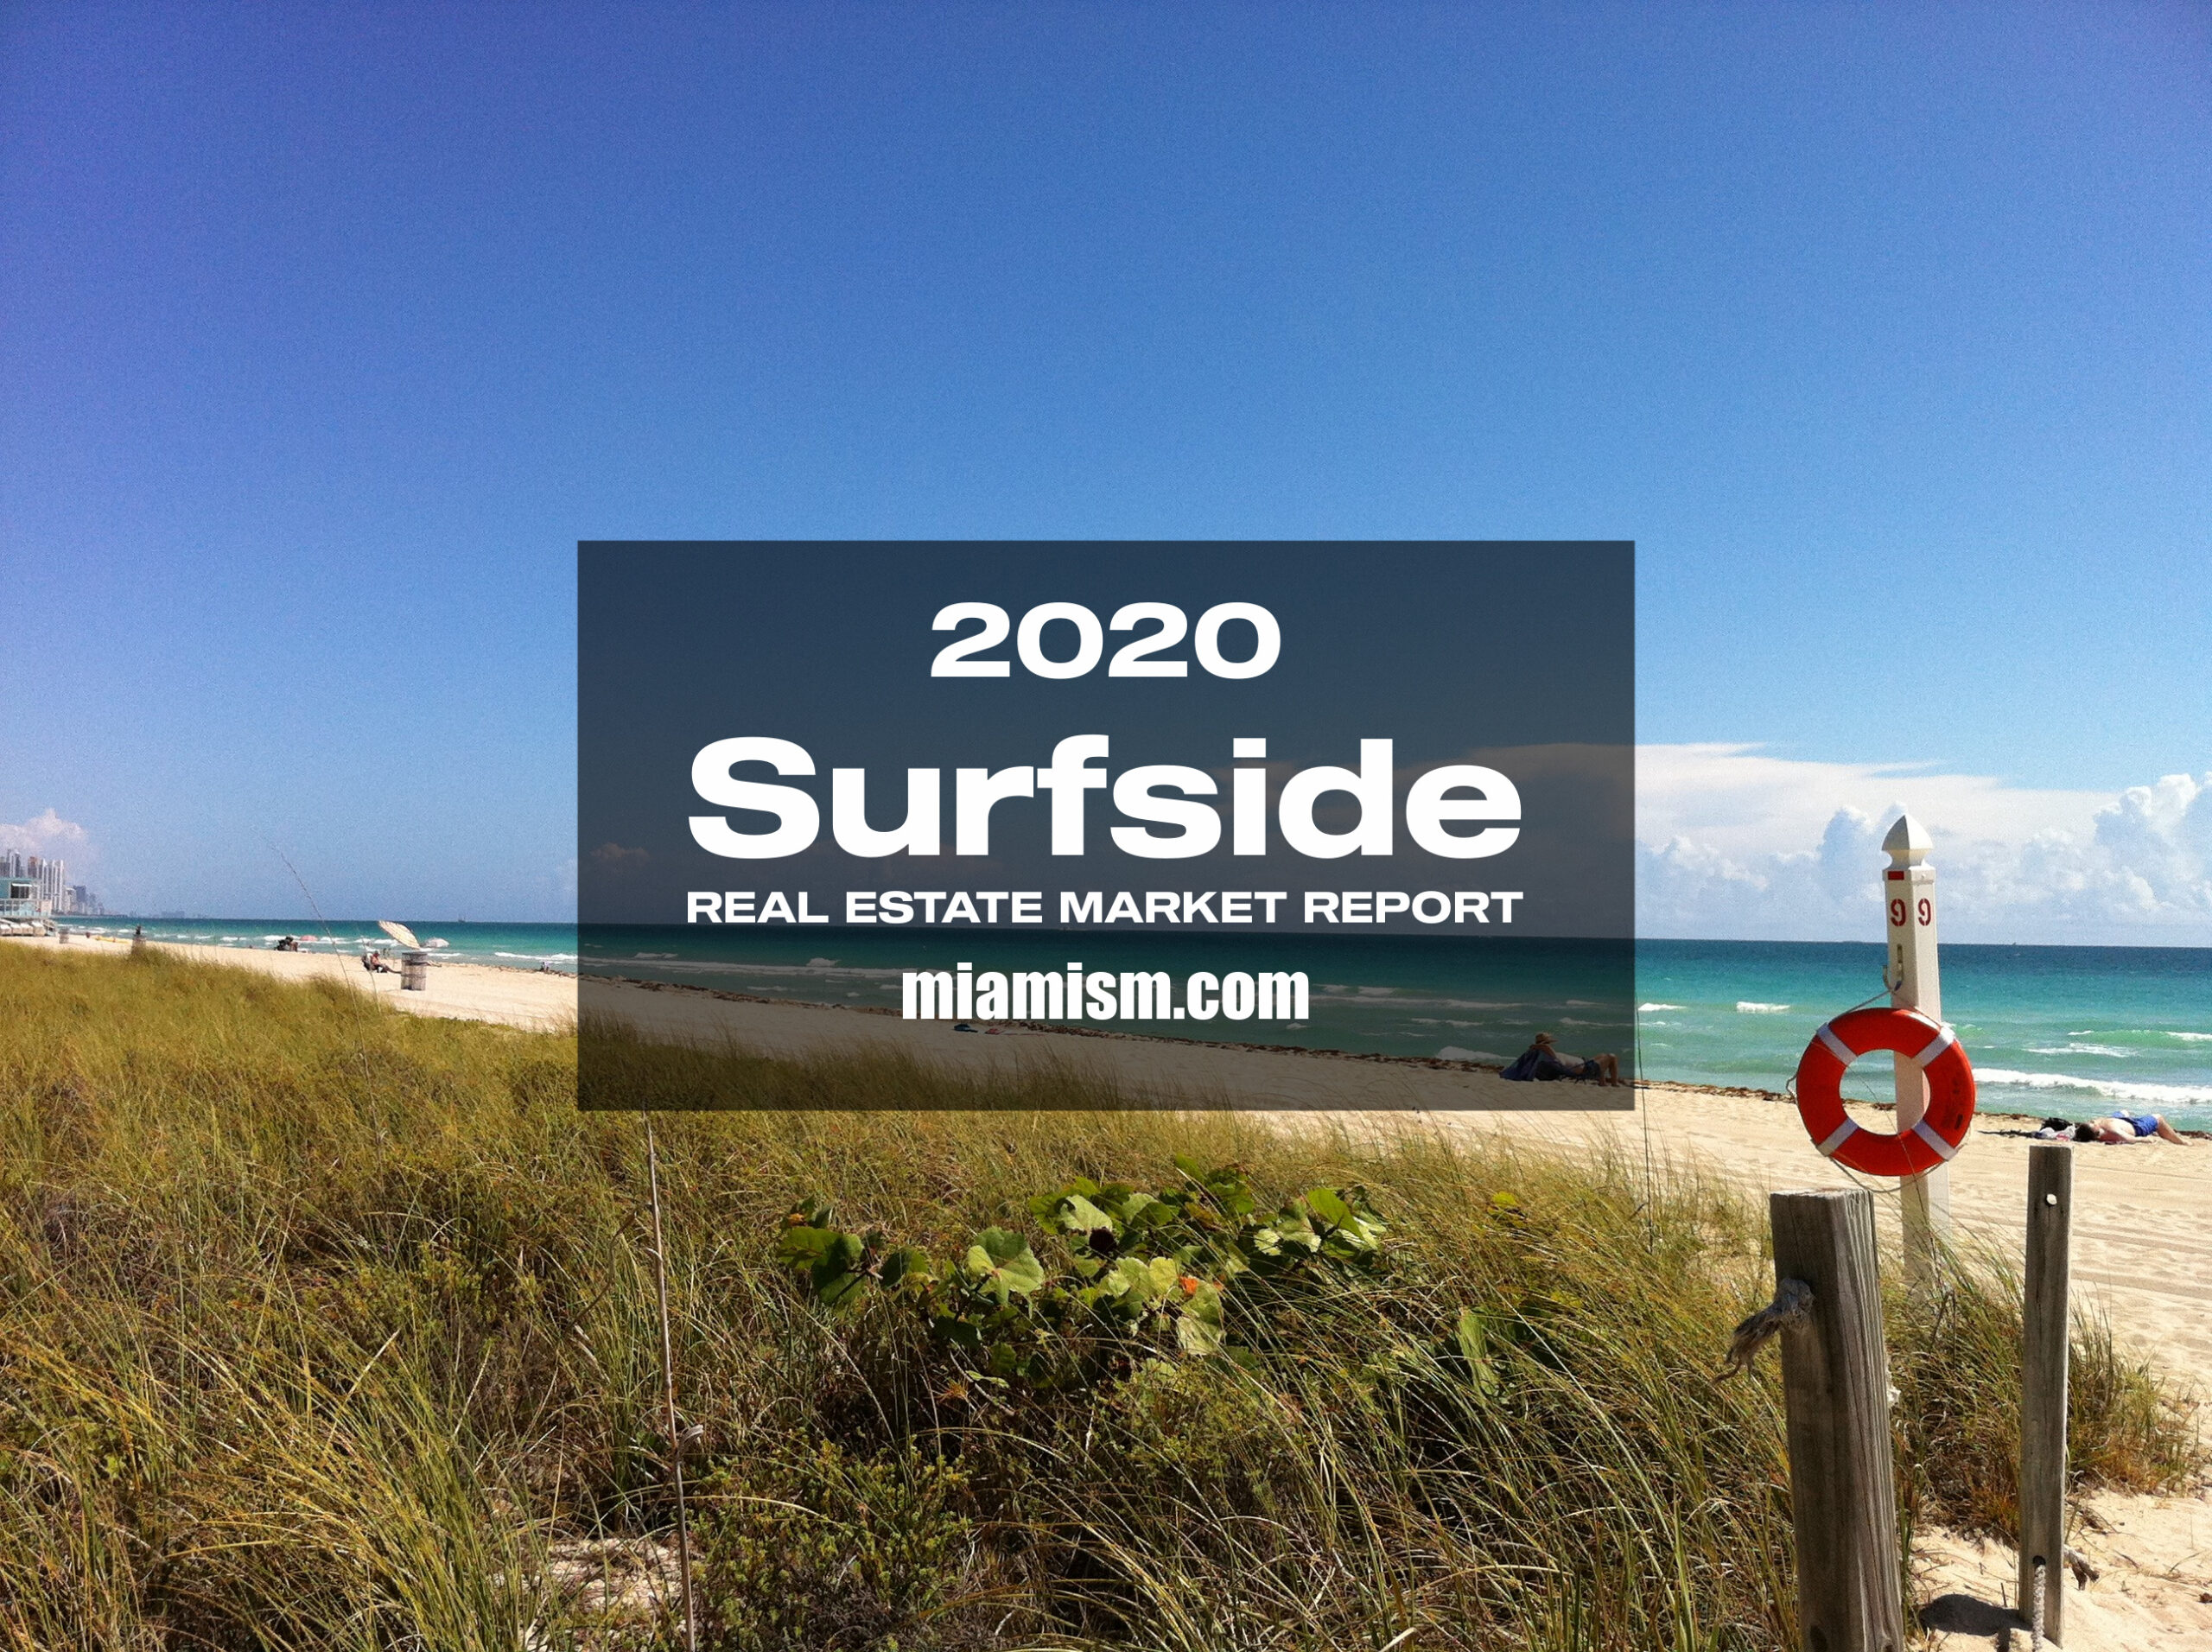 surfside-real-estate-market-report-2020